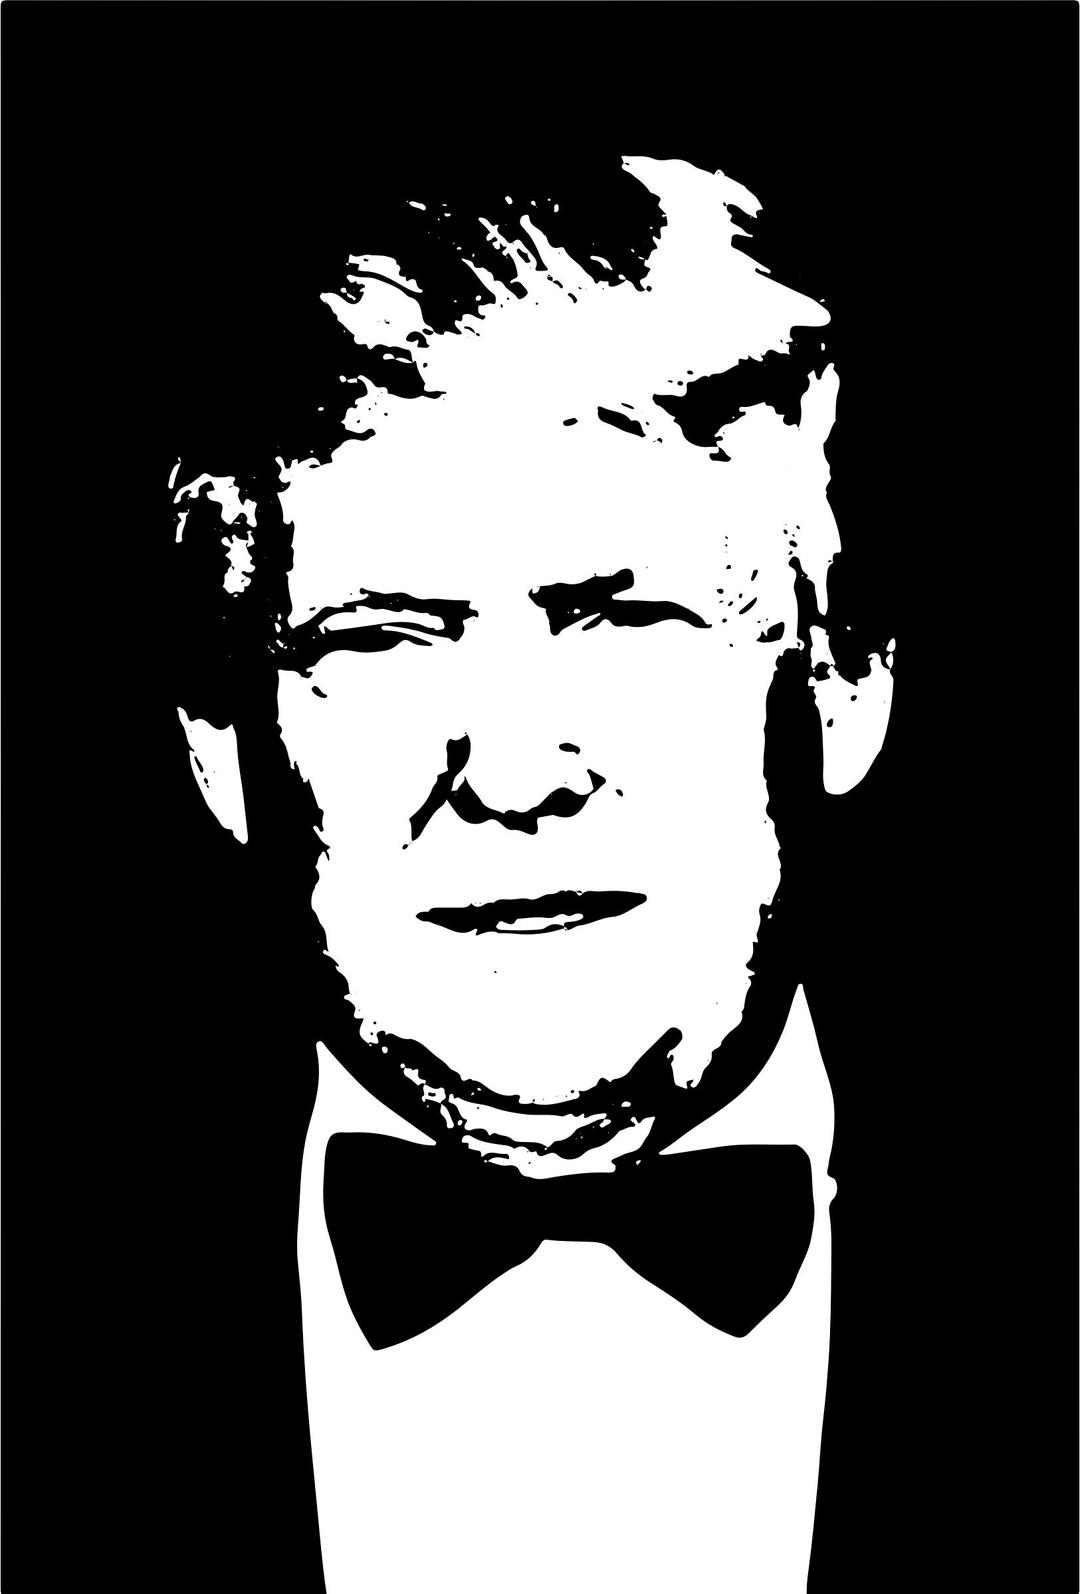 Donald Trump April 2015 Silhouette png transparent